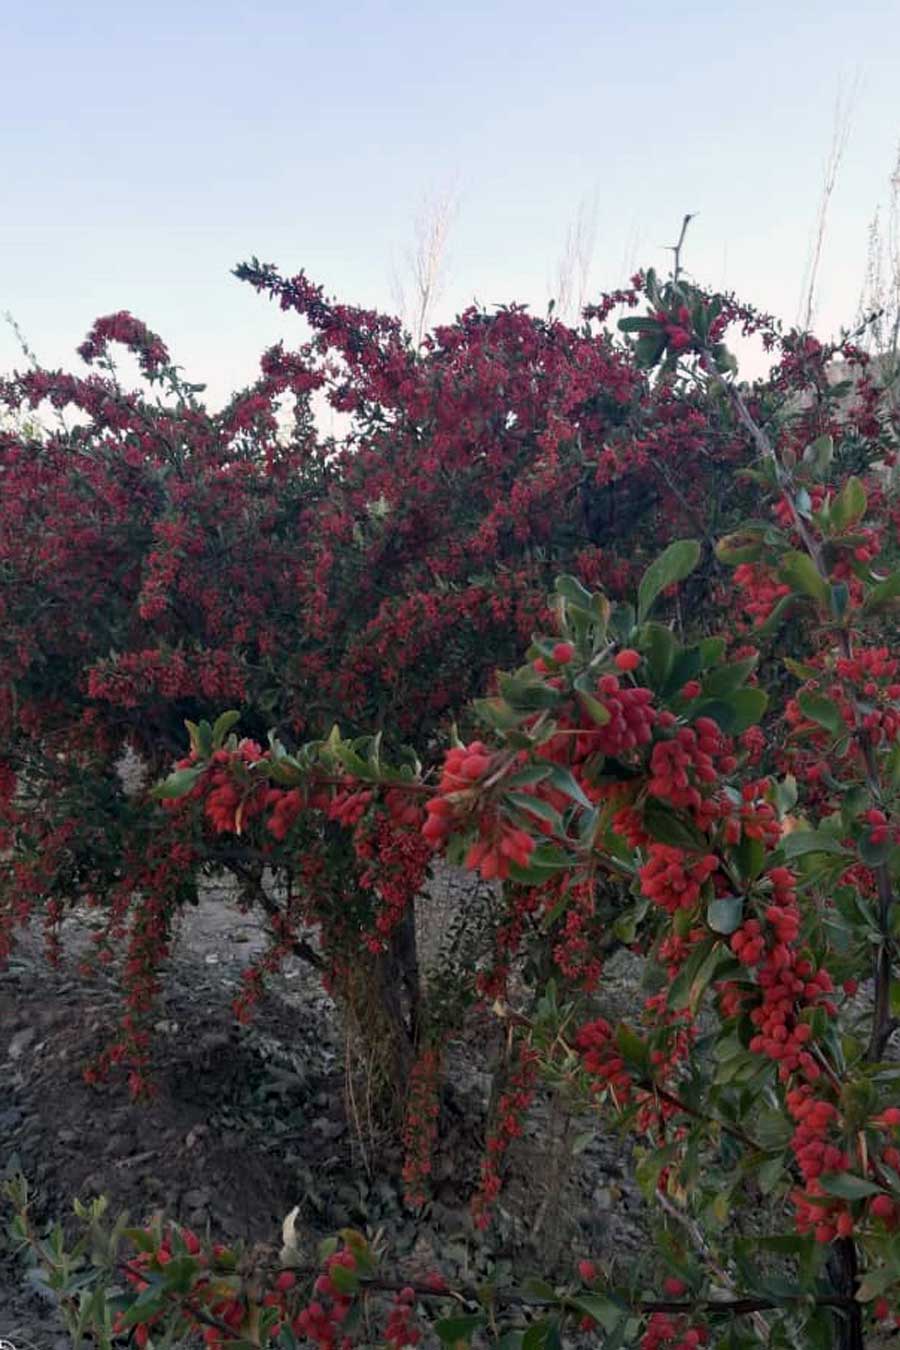 Arbuste d'épine-vinette bio et sauvage de Shiraz, en Iran